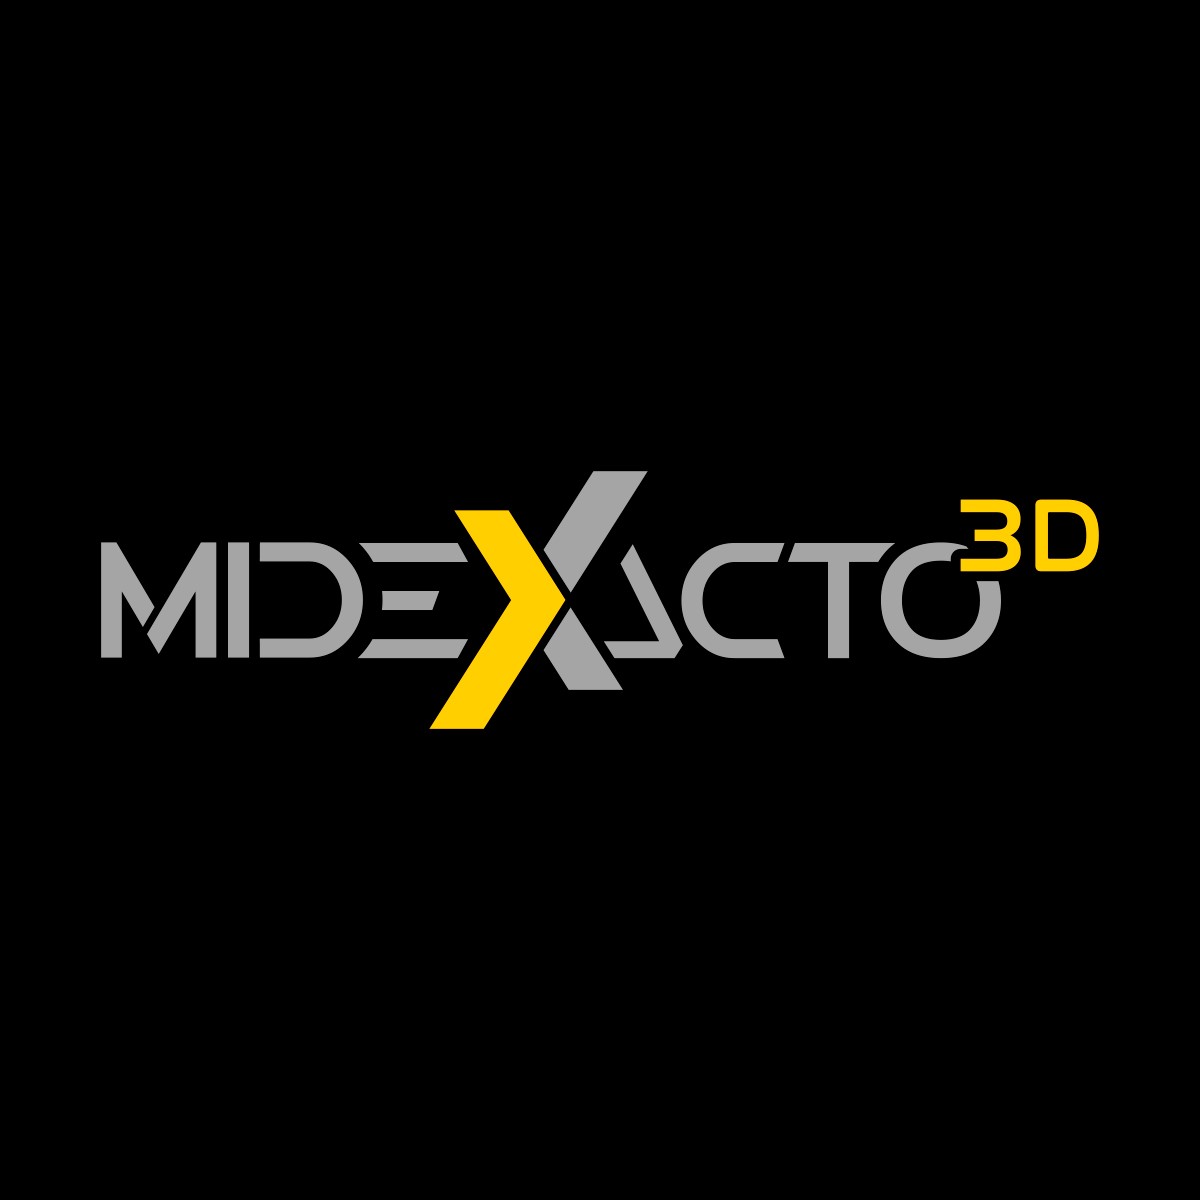 Midexacto 3D